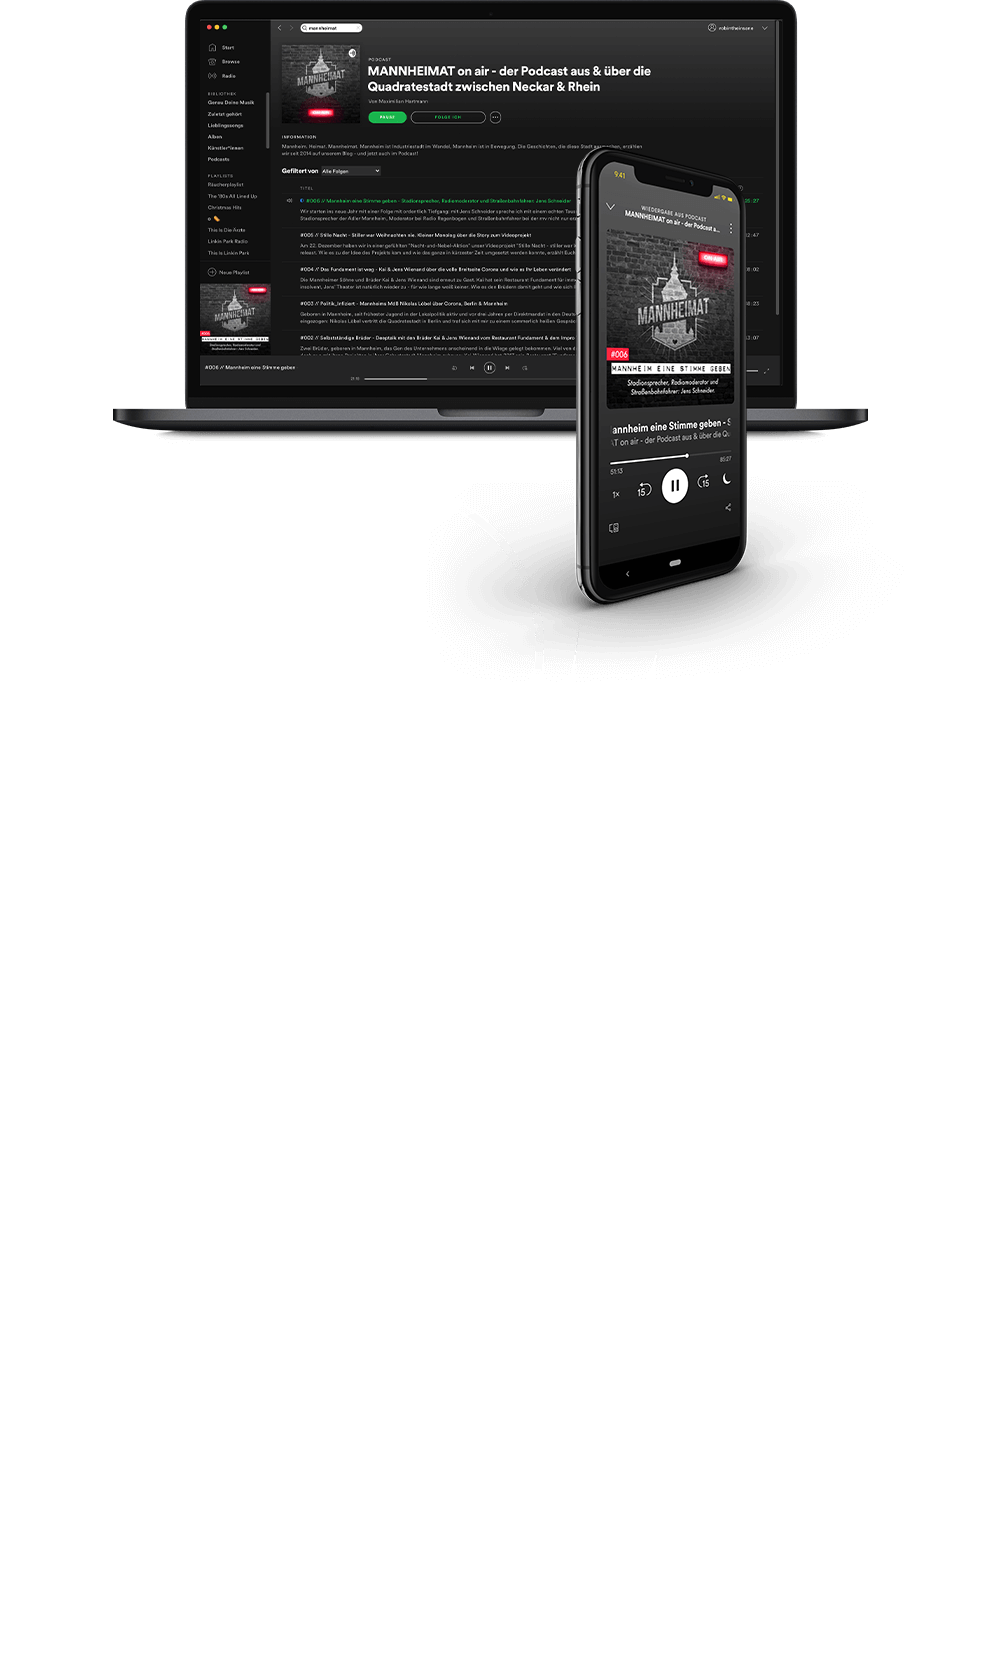 Mannheimat Podcast & Video